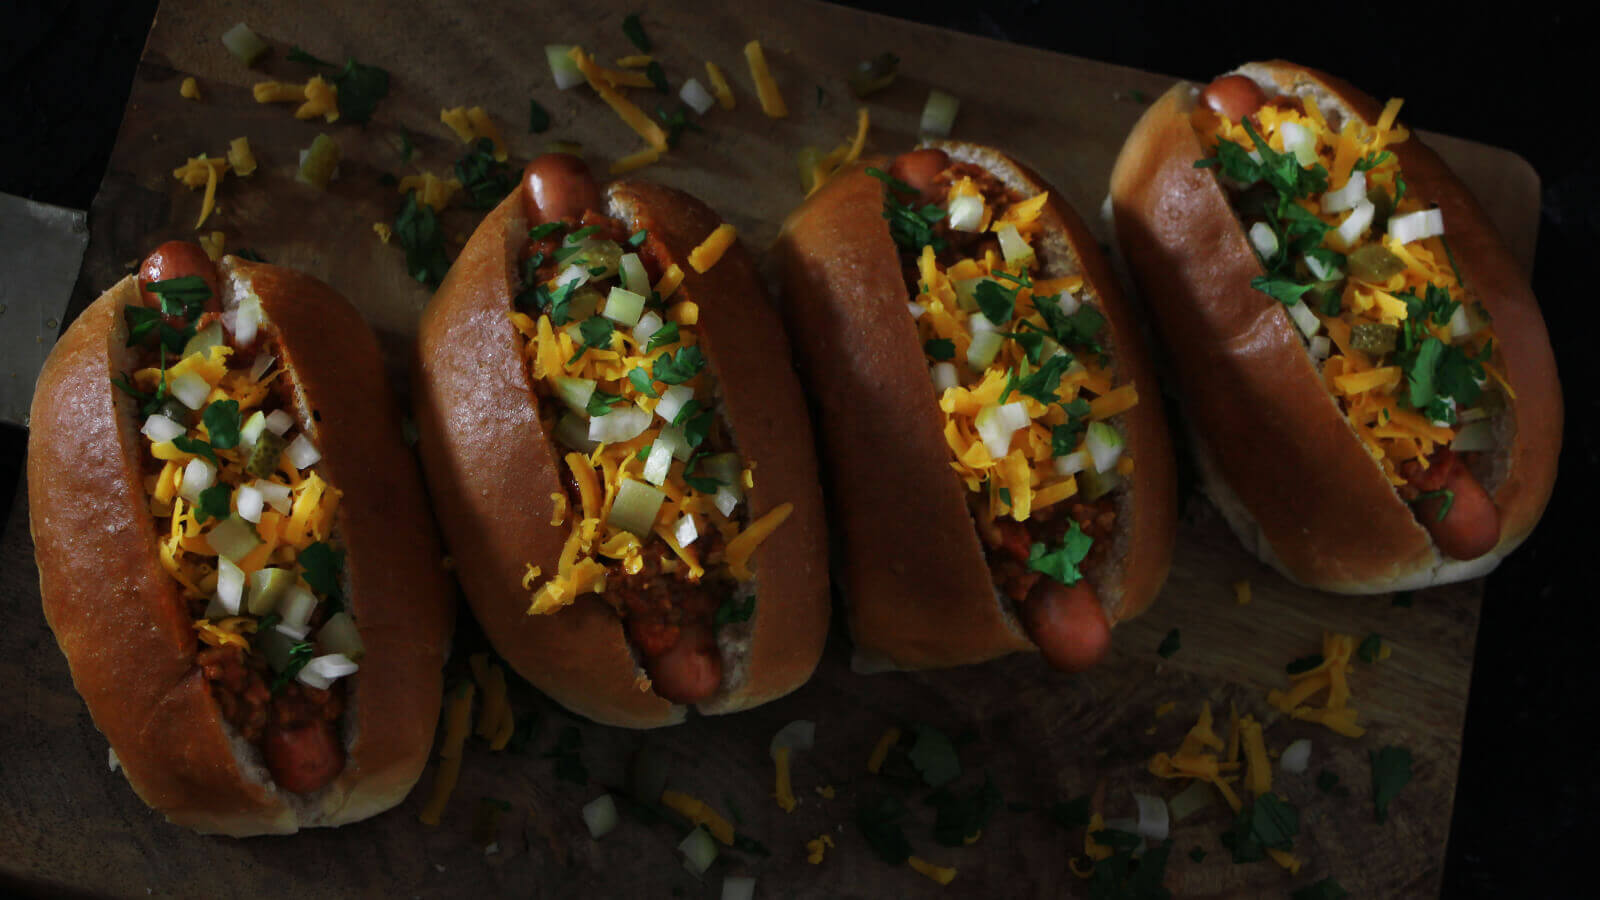 Met dit recept voor Chili Dogs tover je weer wat heel nieuws van de BBQ!